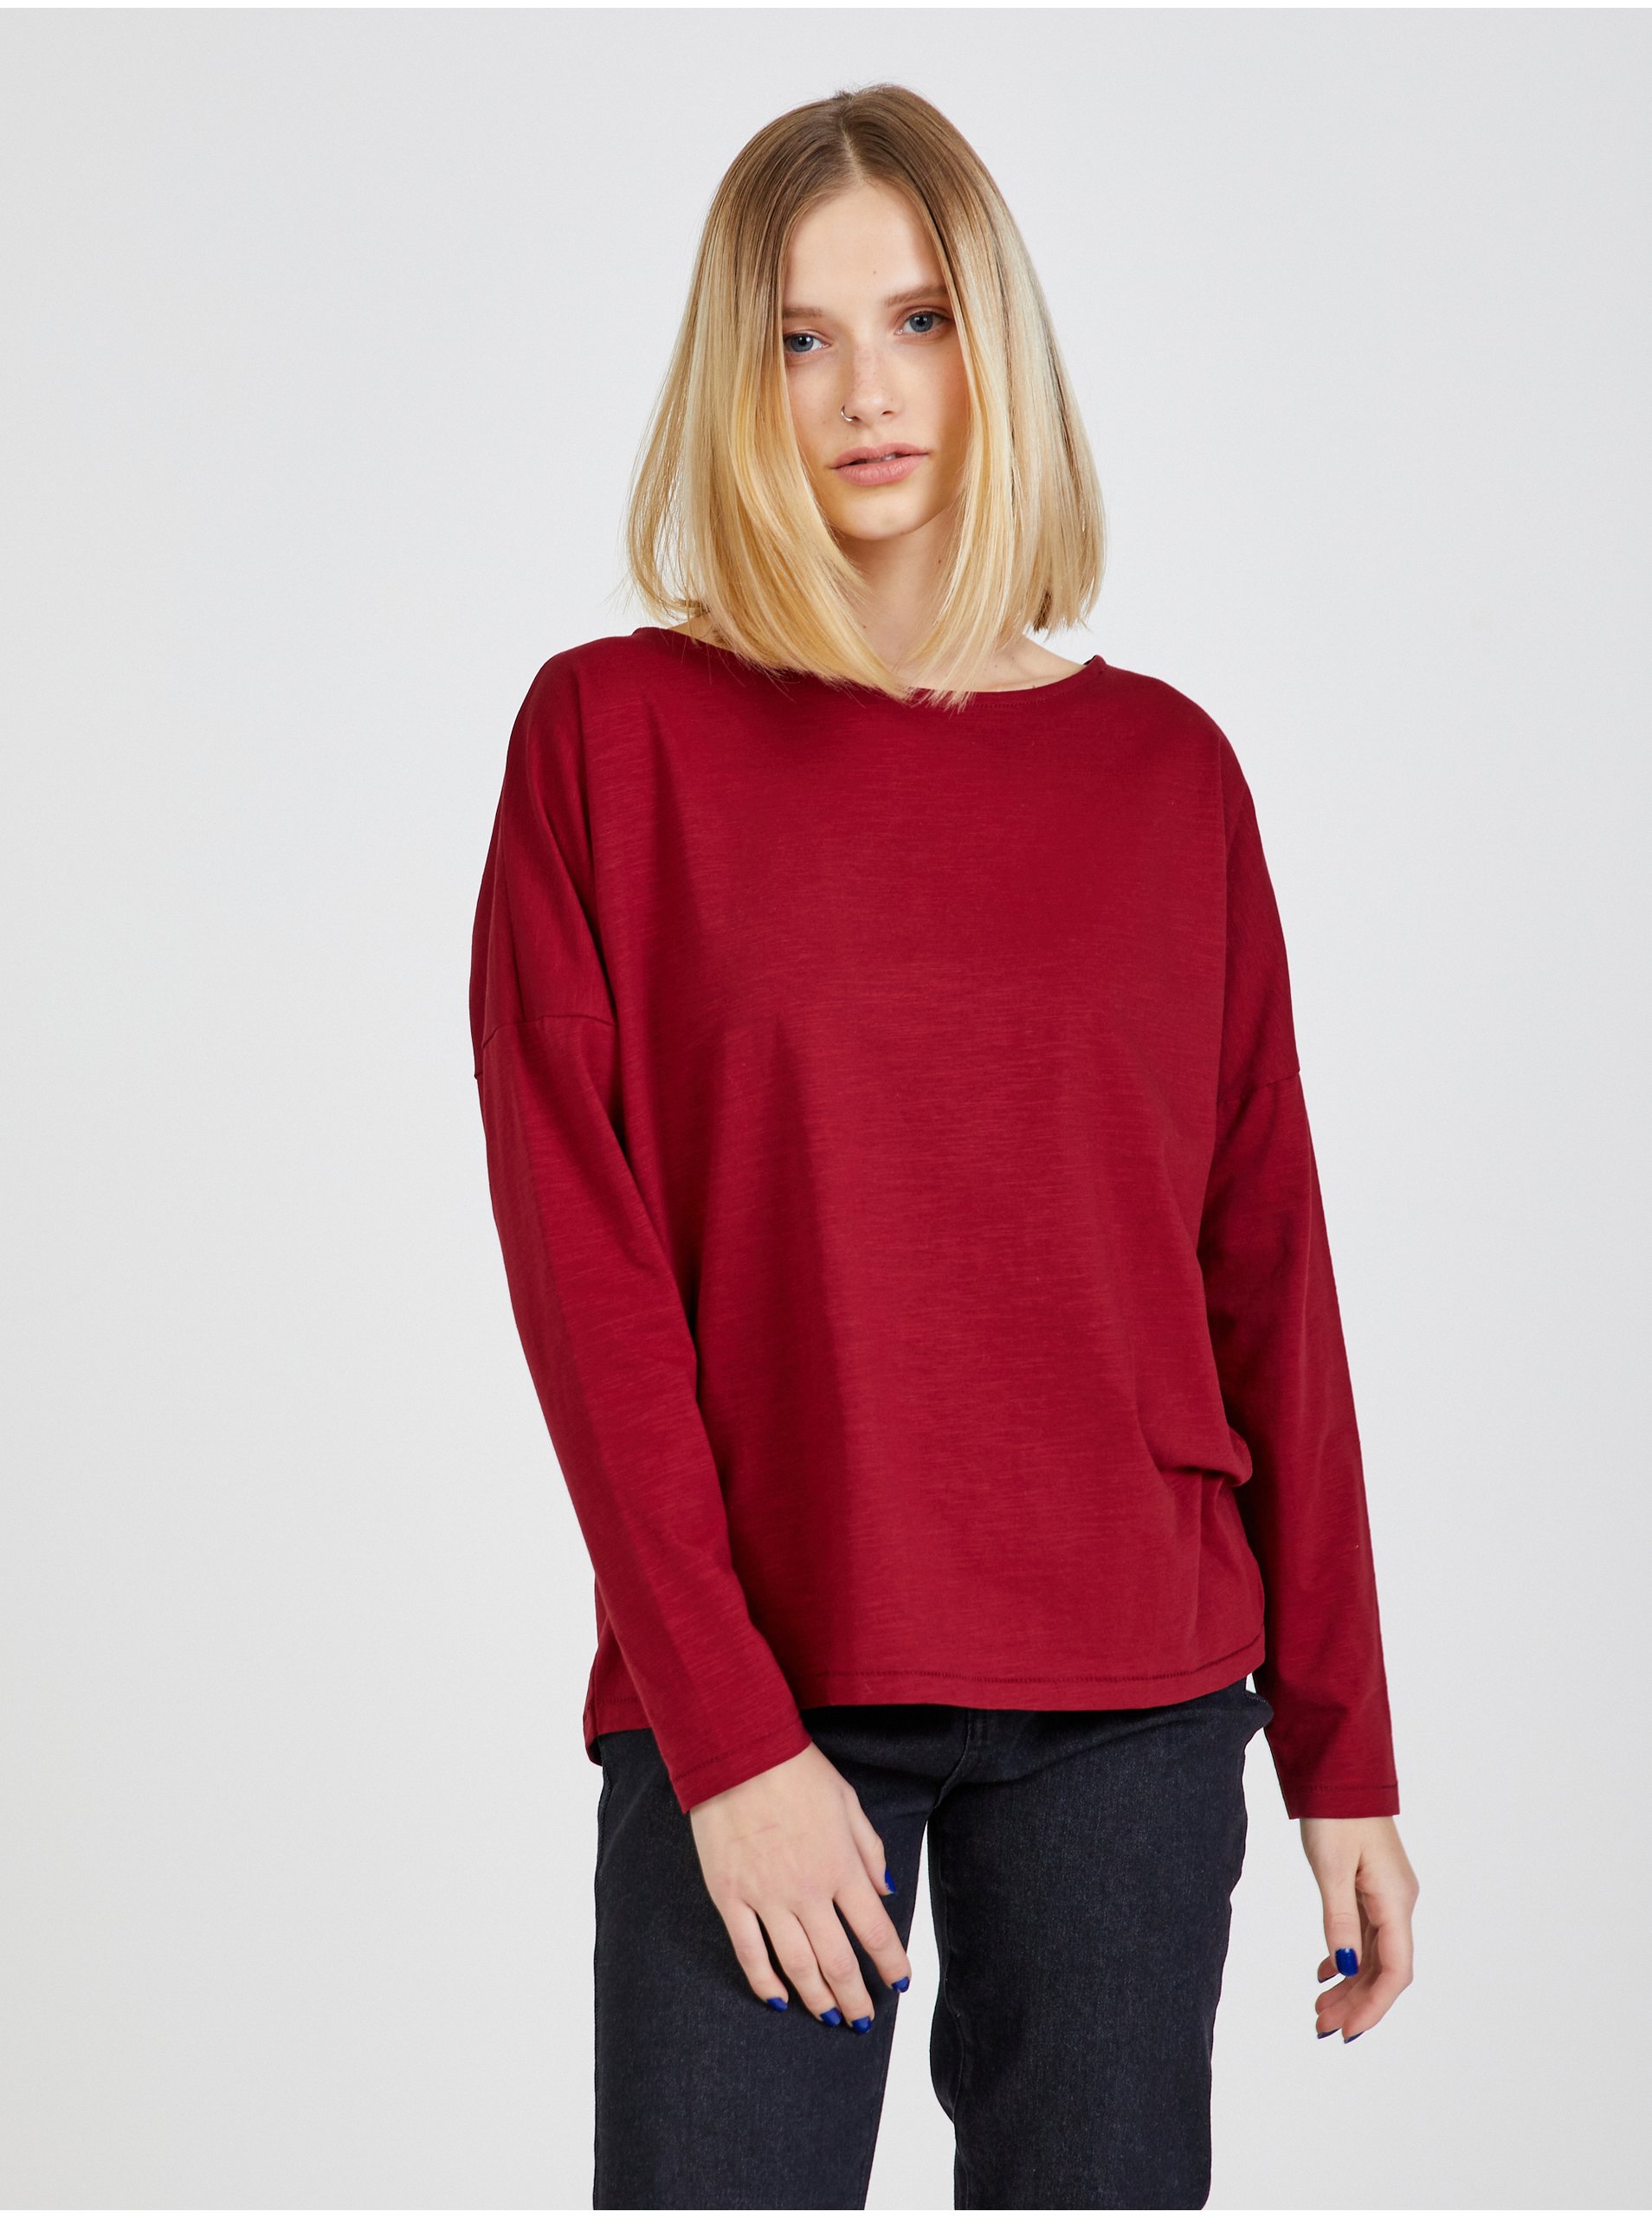 E-shop Červené dámské basic tričko s dlouhým rukávem ZOOT.lab Evana